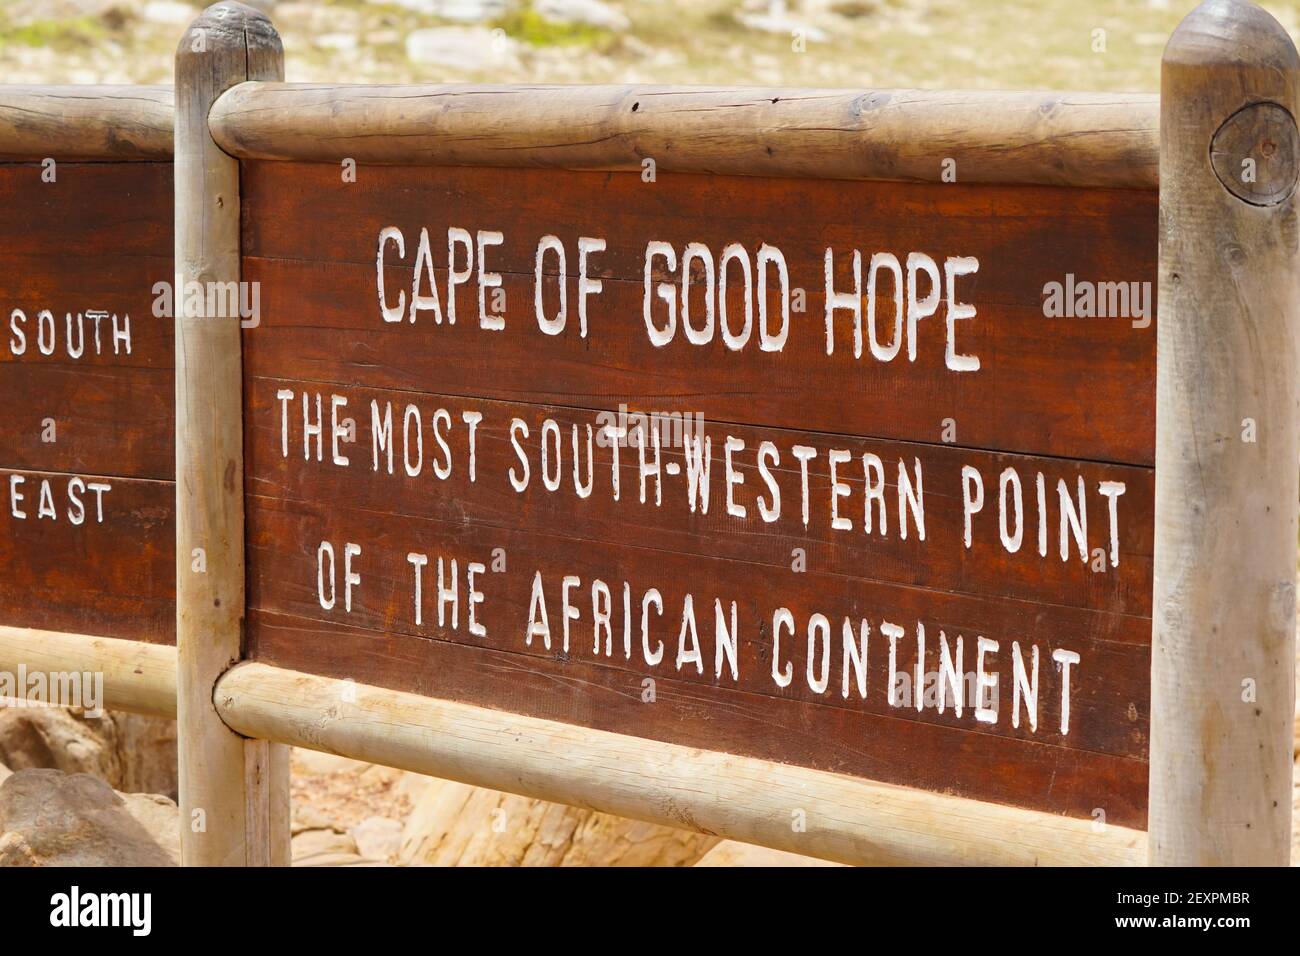 Cape of Good Hope Schild Board closeup, die eine Touristenattraktion, Touristenziel, Ort von Interesse am Cape Point Naturschutzgebiet, Südafrika ist Stockfoto